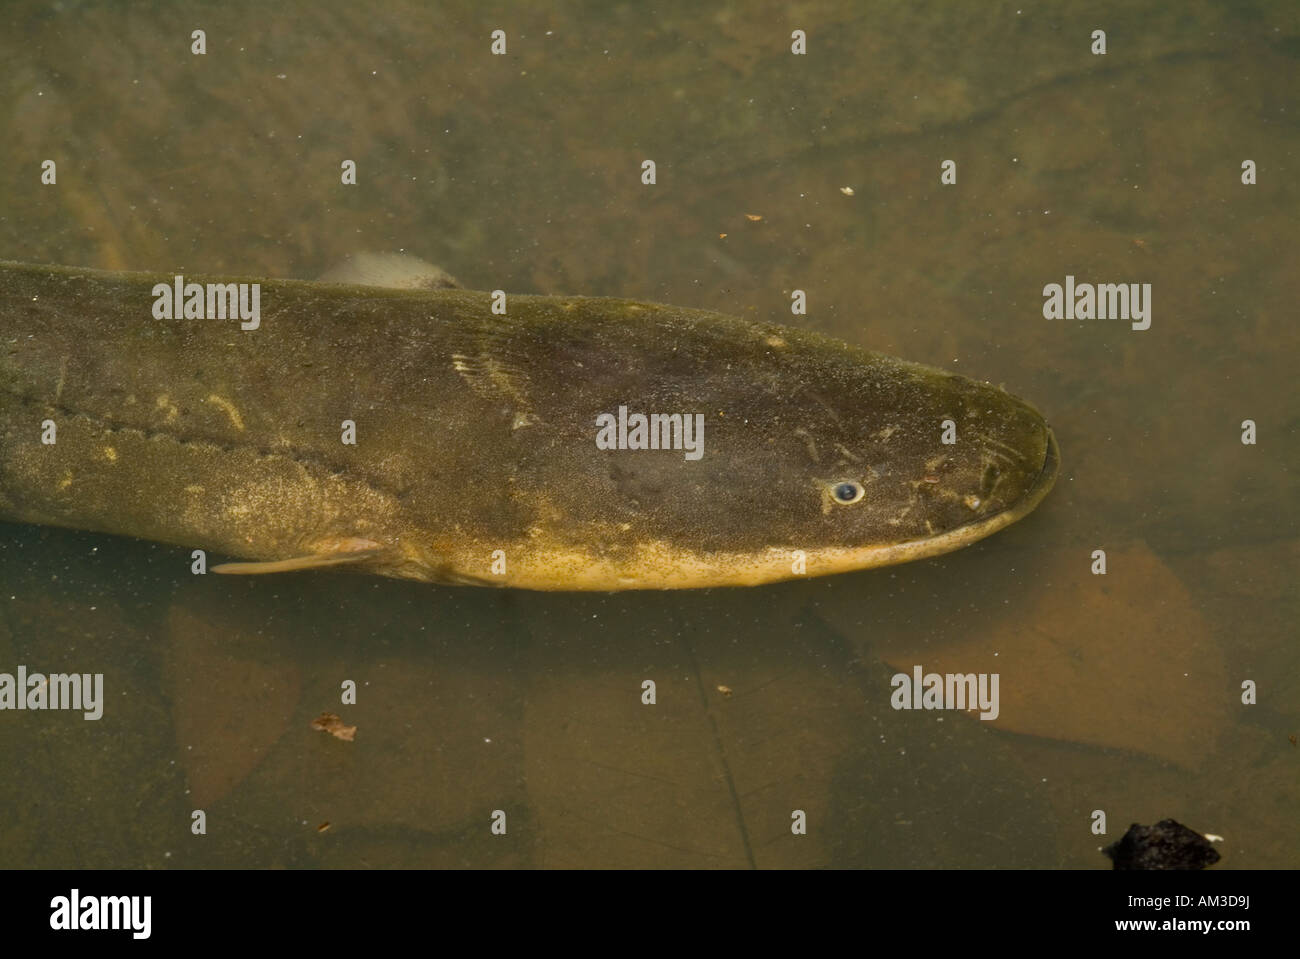 L'anguille électrique (Electrophorus récemment rebaptisée varii) wild, RIo Yavari, Amazonie péruvienne Banque D'Images